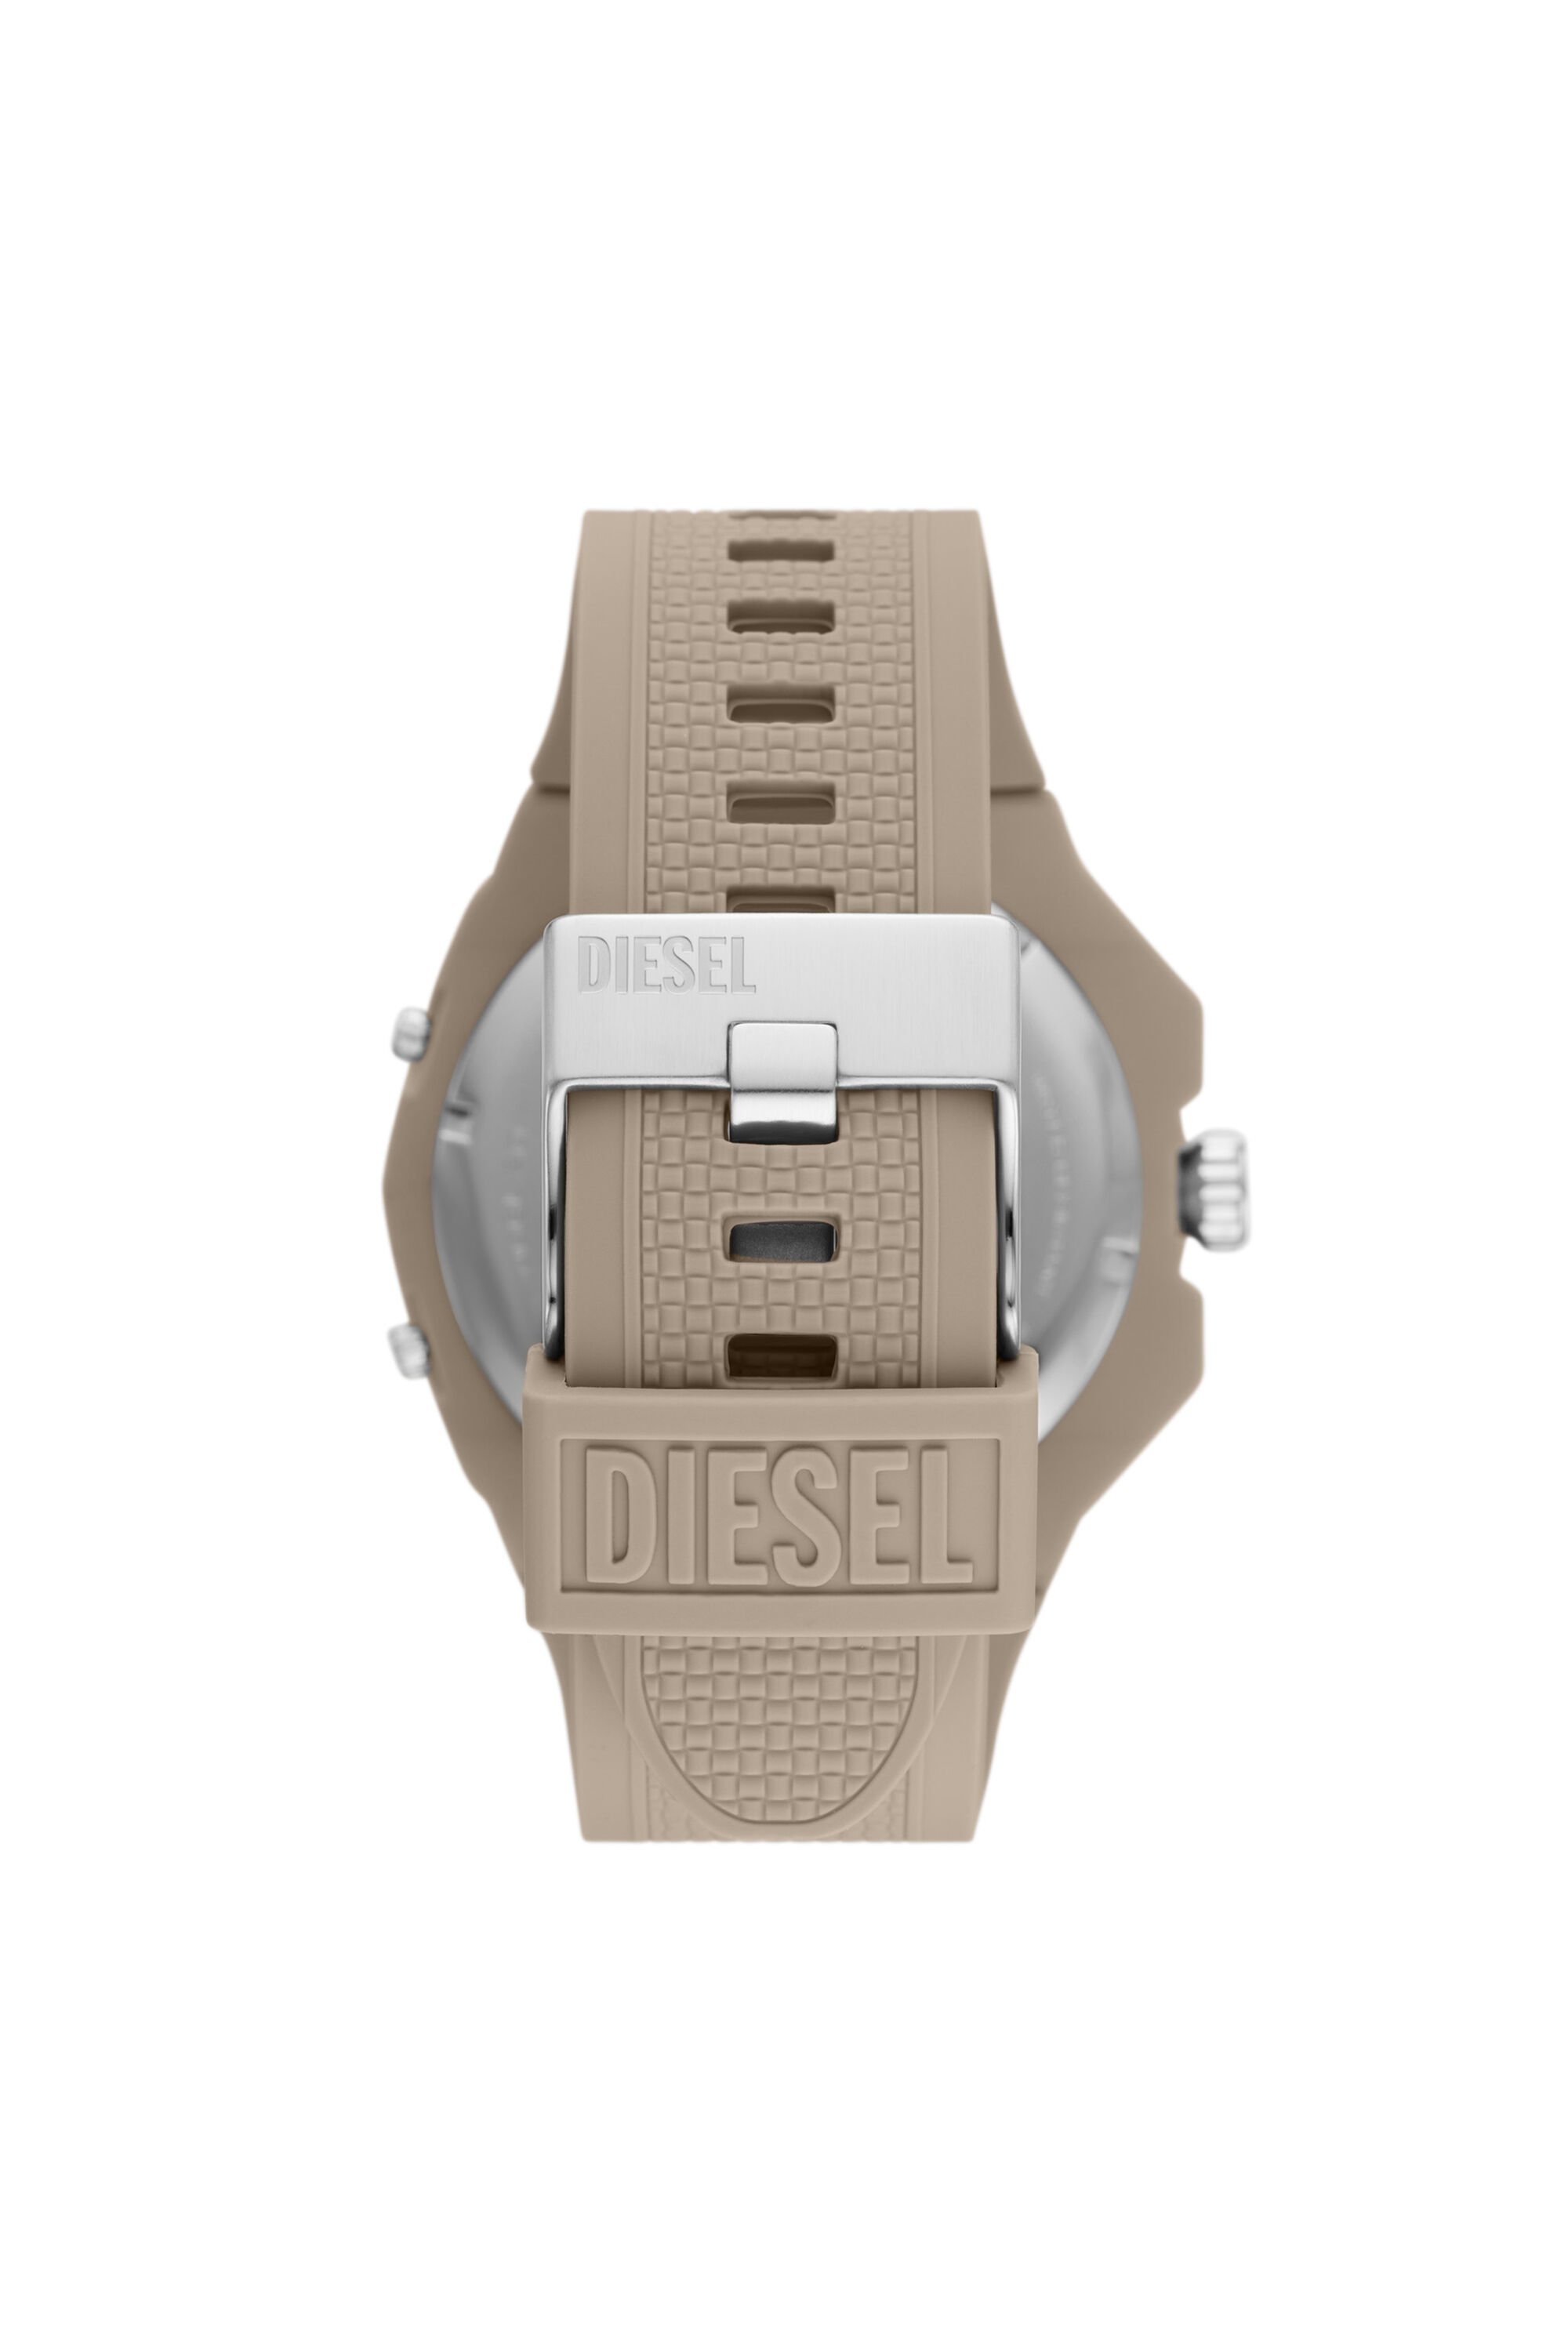 Diesel - DZ1990, Beige - Image 2